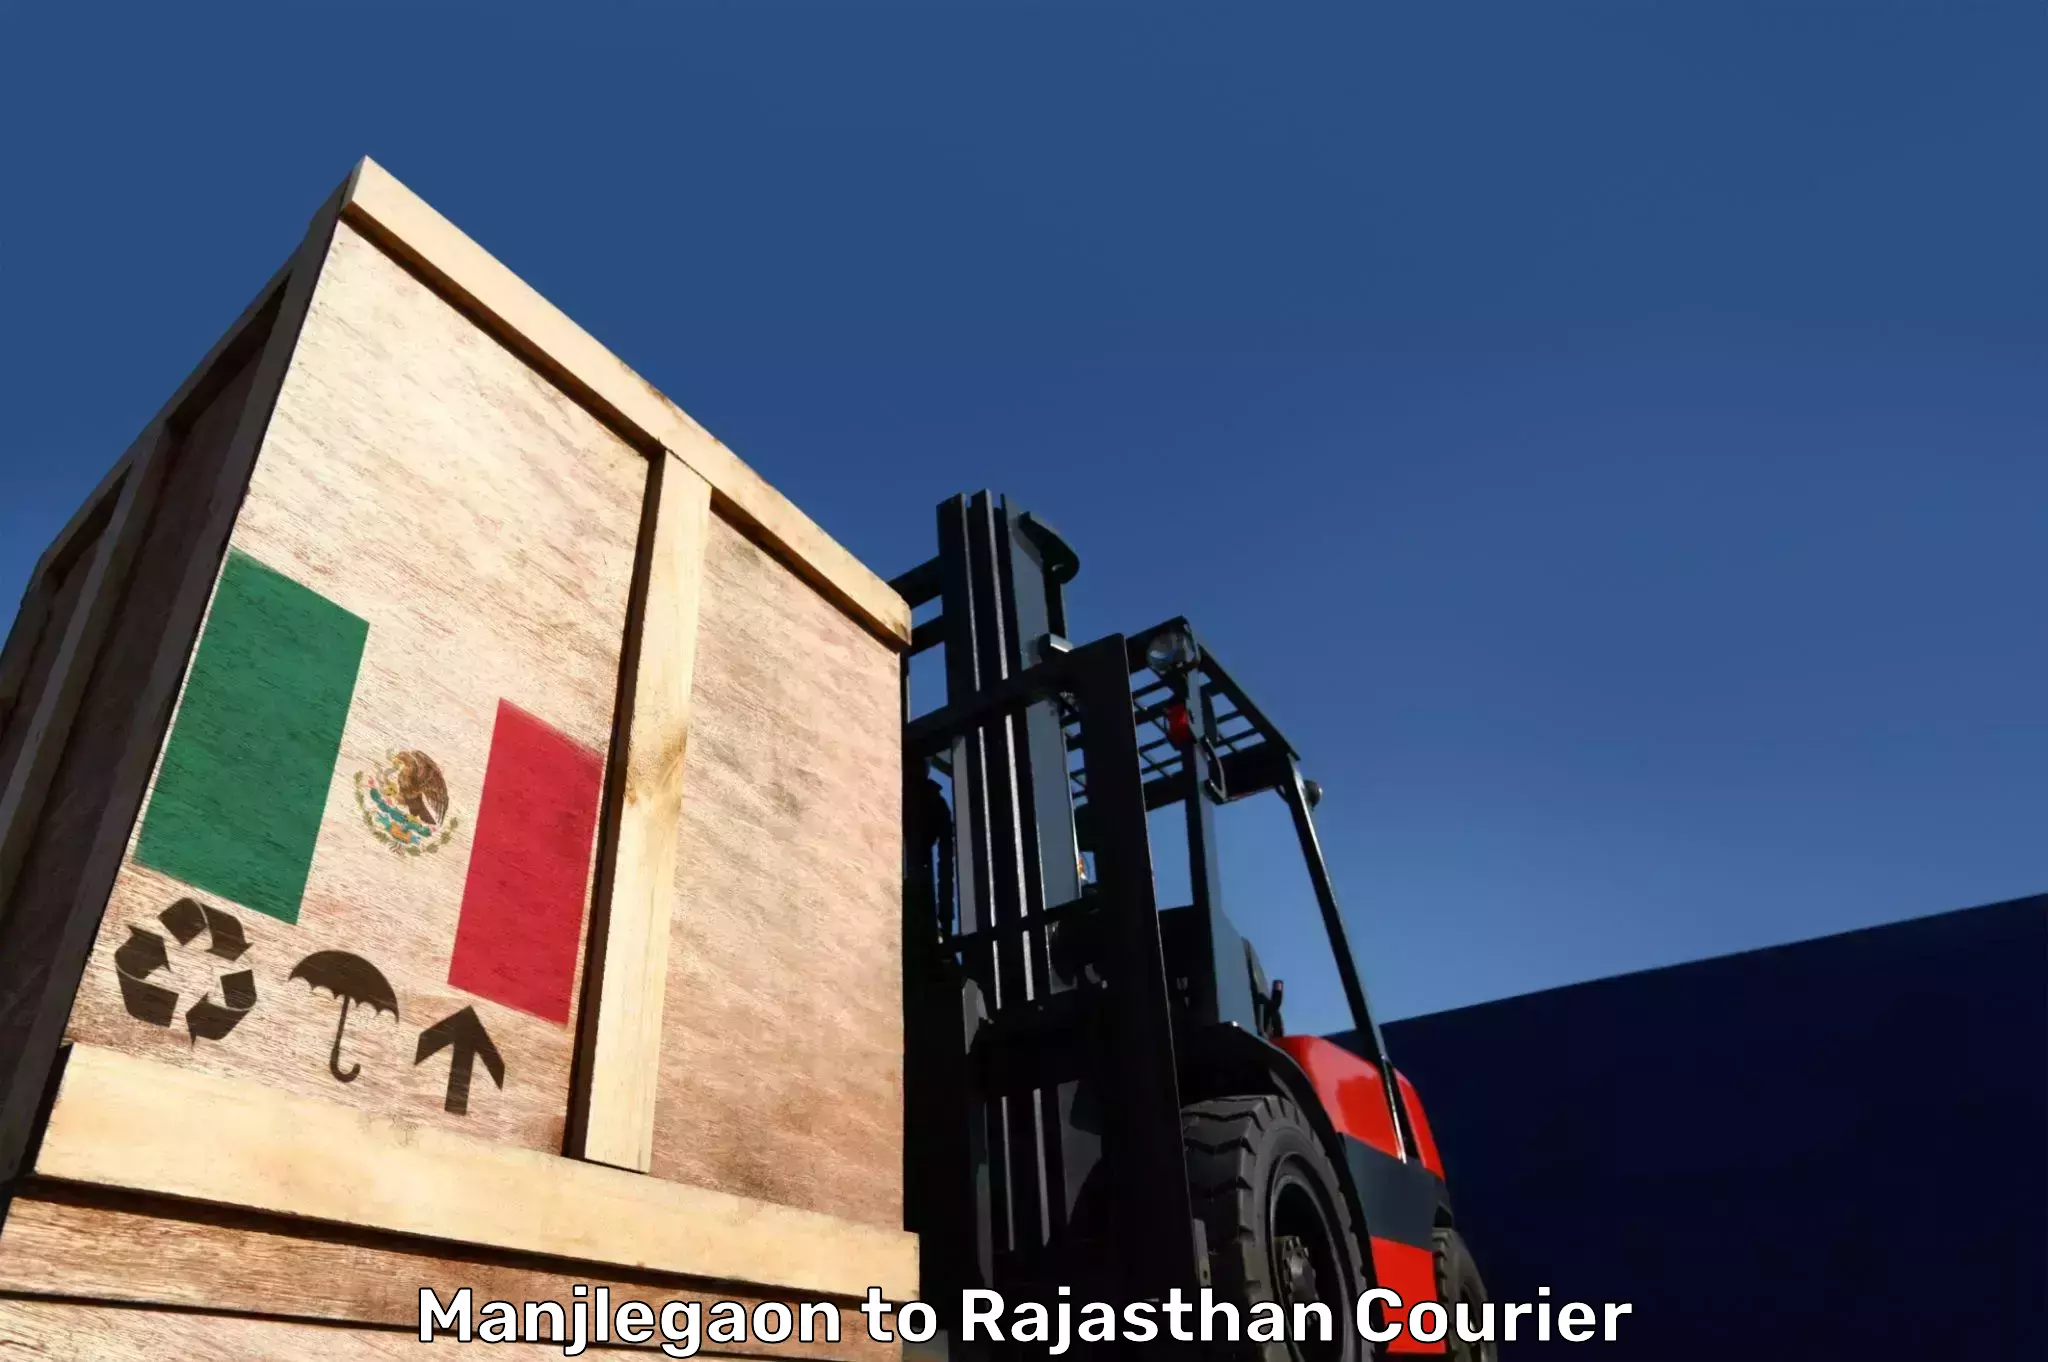 Baggage courier guide Manjlegaon to Rajasthan